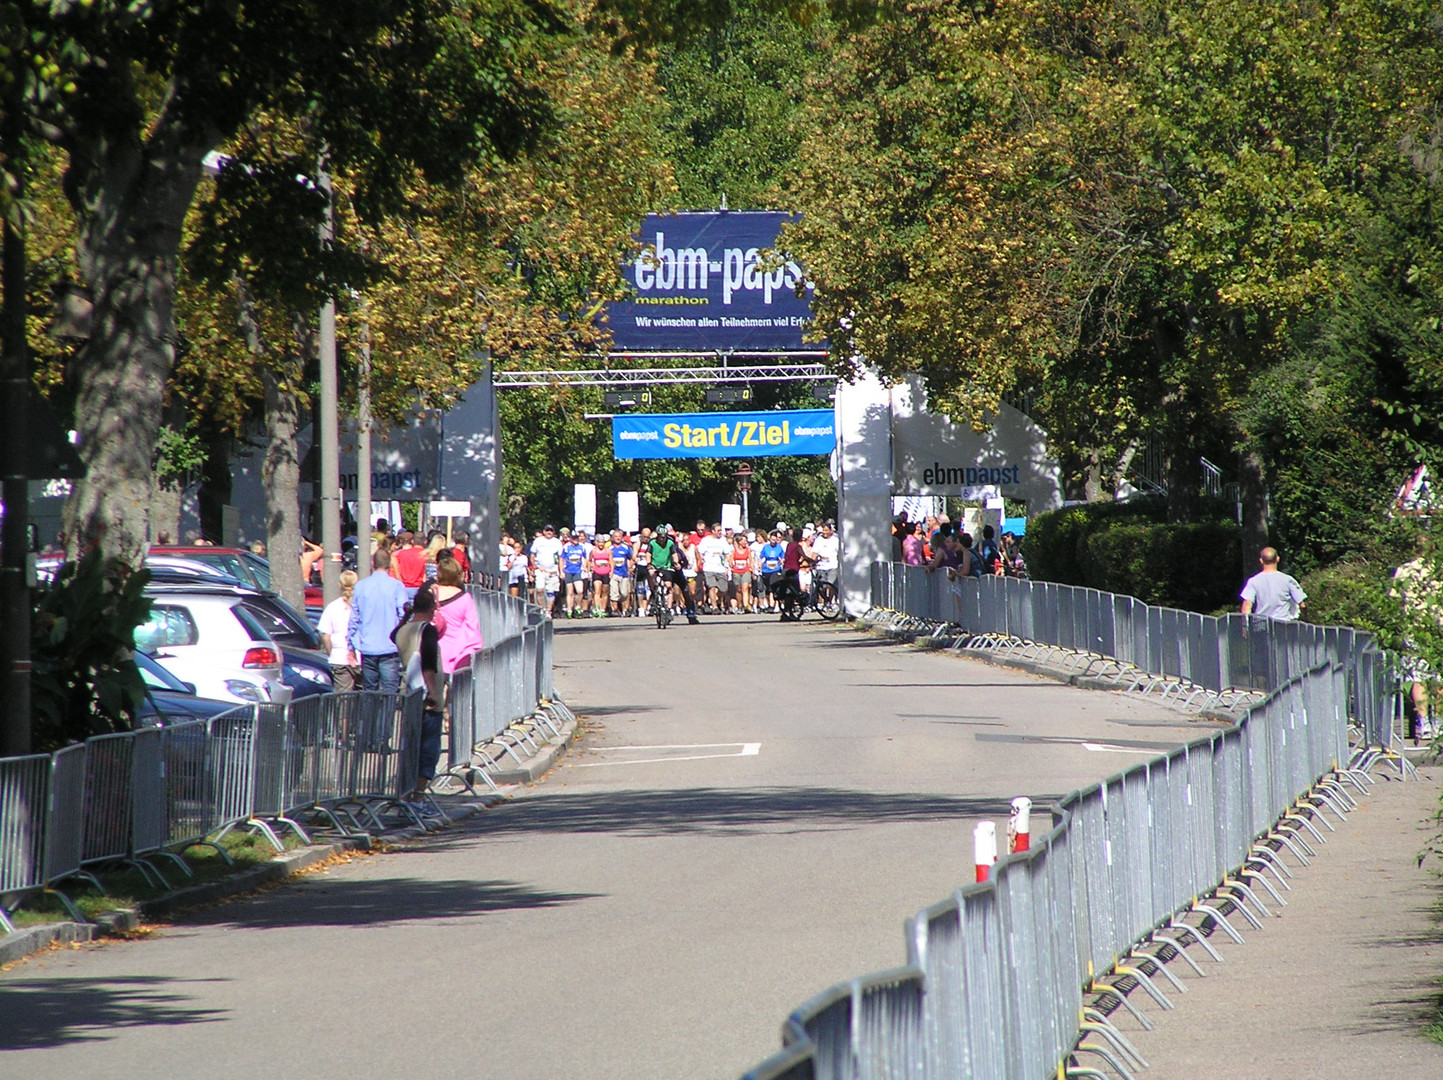 16. ebm-papst-marathon. Niedernhall. 11.09.2011 -Walking-1, Hohenlohe